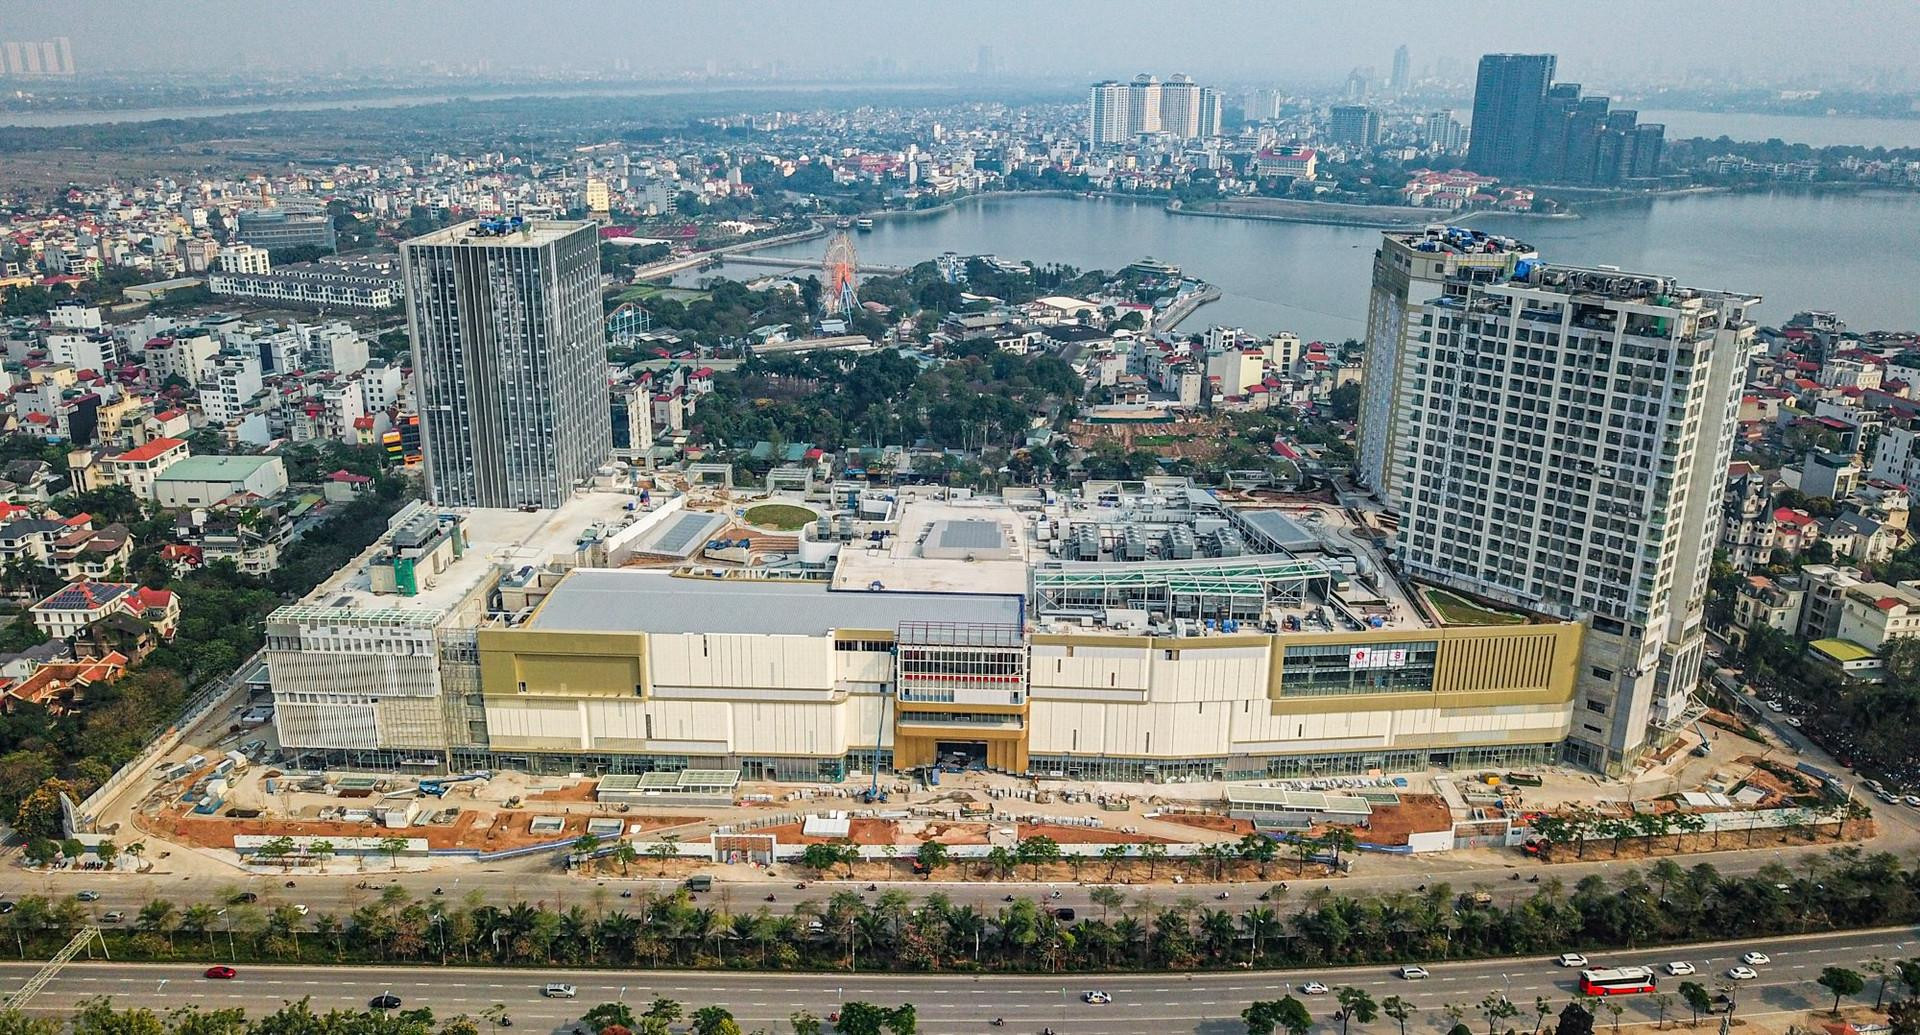 BĐS bán lẻ nóng dần: Lotte mở tổ hợp lớn chưa từng có tại Việt Nam, AEON Mall rót 25 triệu USD xây TTTM ngay mặt Quốc lộ 22, Vincom rục rịch khai trương nhiều công trình - Ảnh 1.